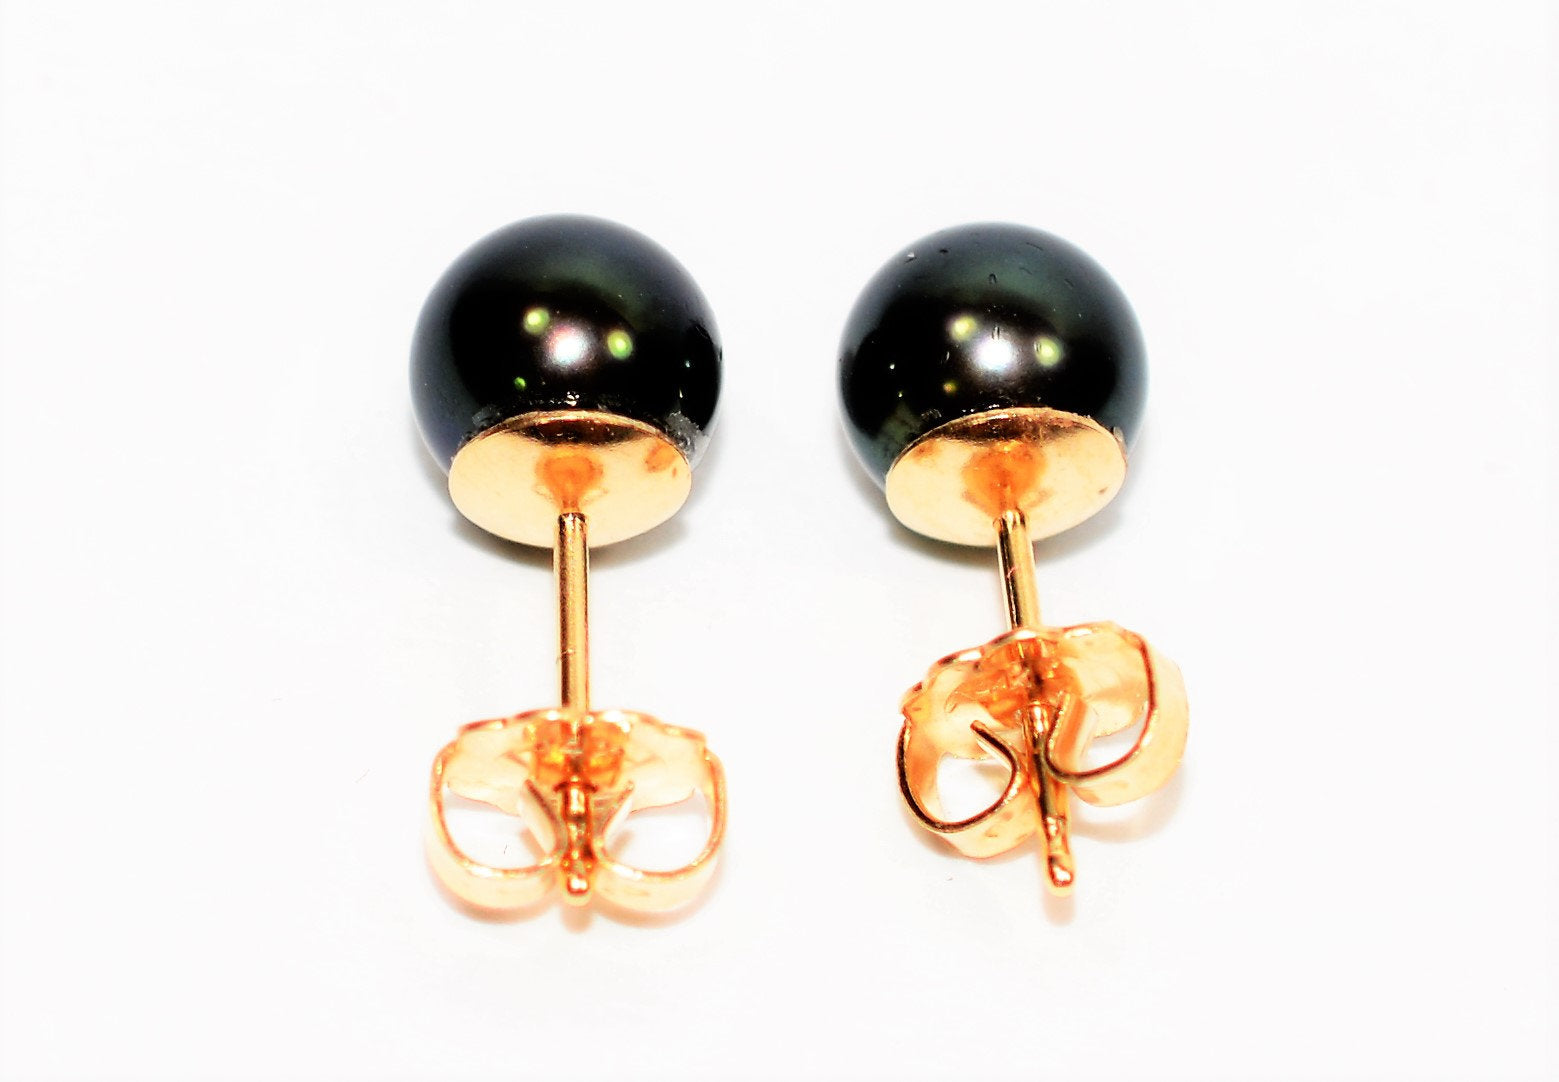 Natural Black Tahitian Pearl Earrings 14K Solid Gold Earrings Solitaire Earrings Ball Earrings Stud Earrings Vintage Estate Women's Earrings